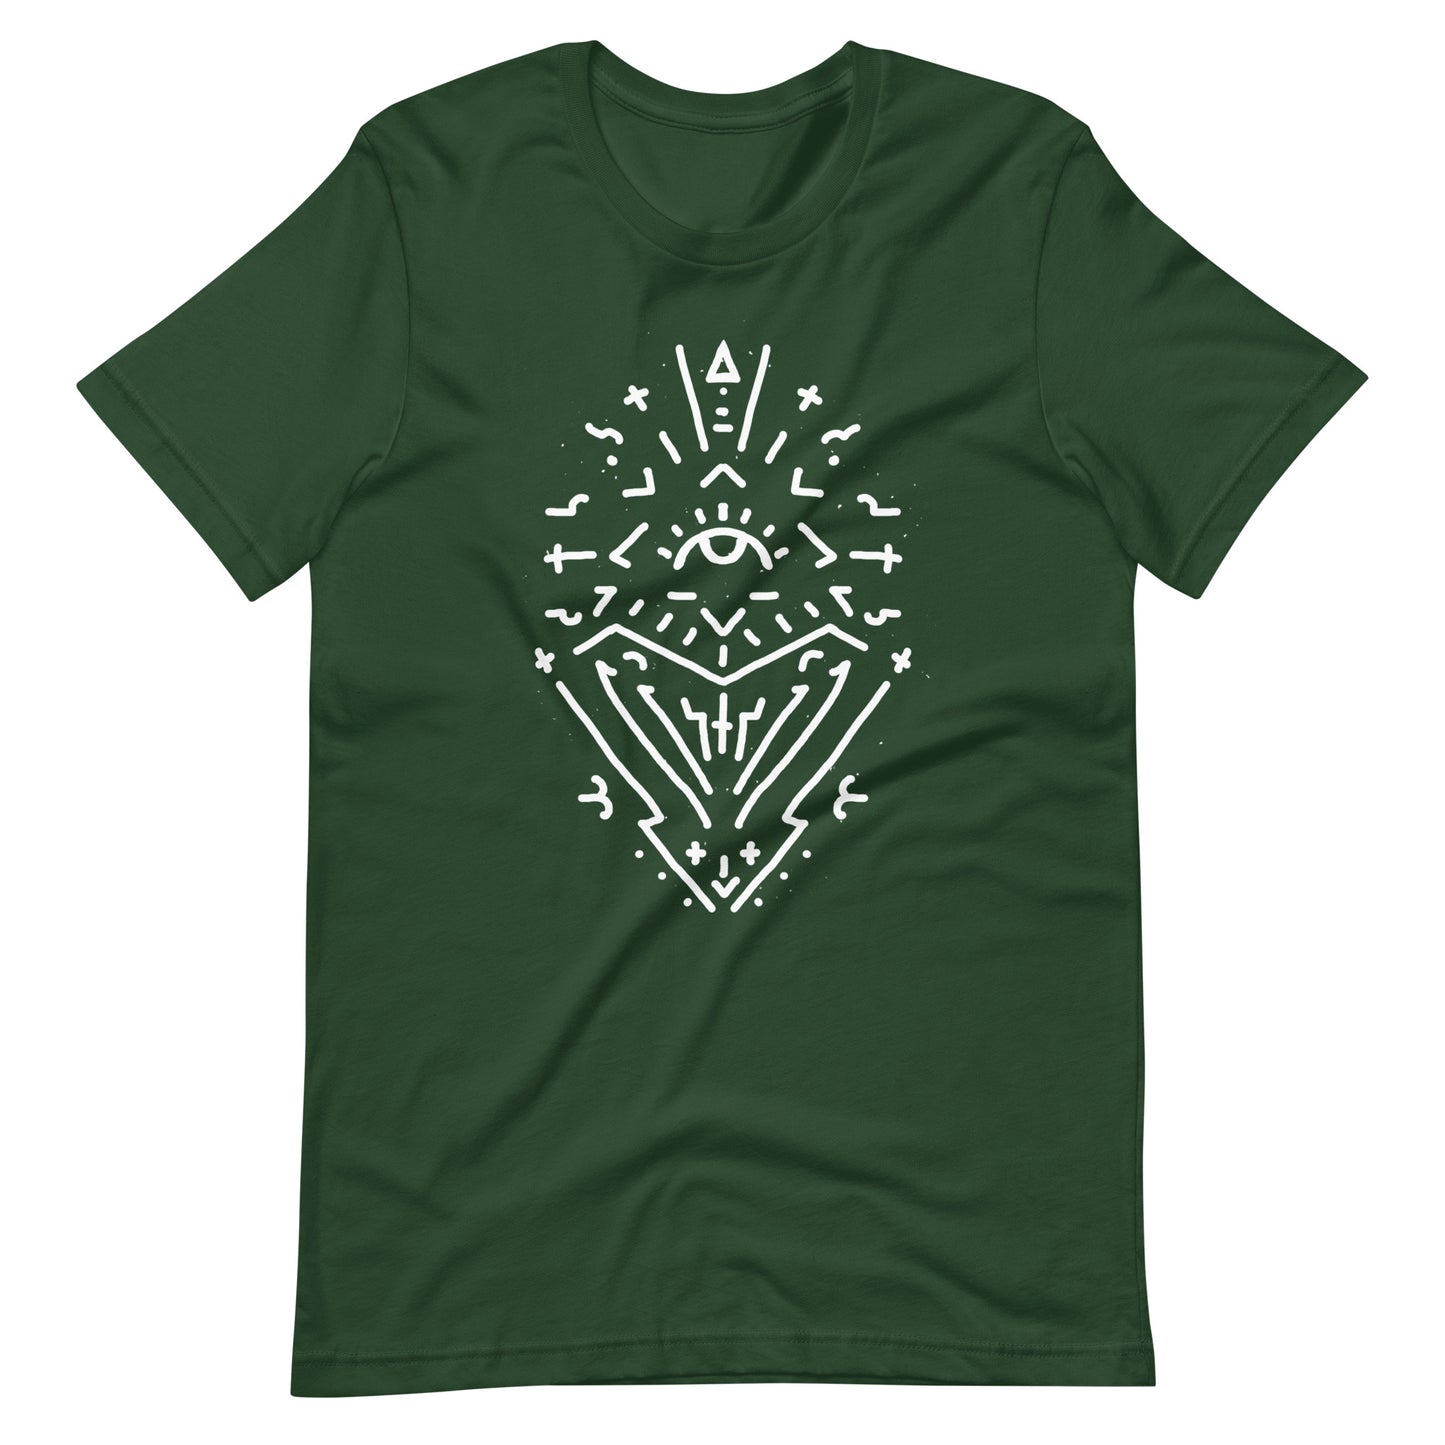 Near Light - Men's t-shirt - Forest Front